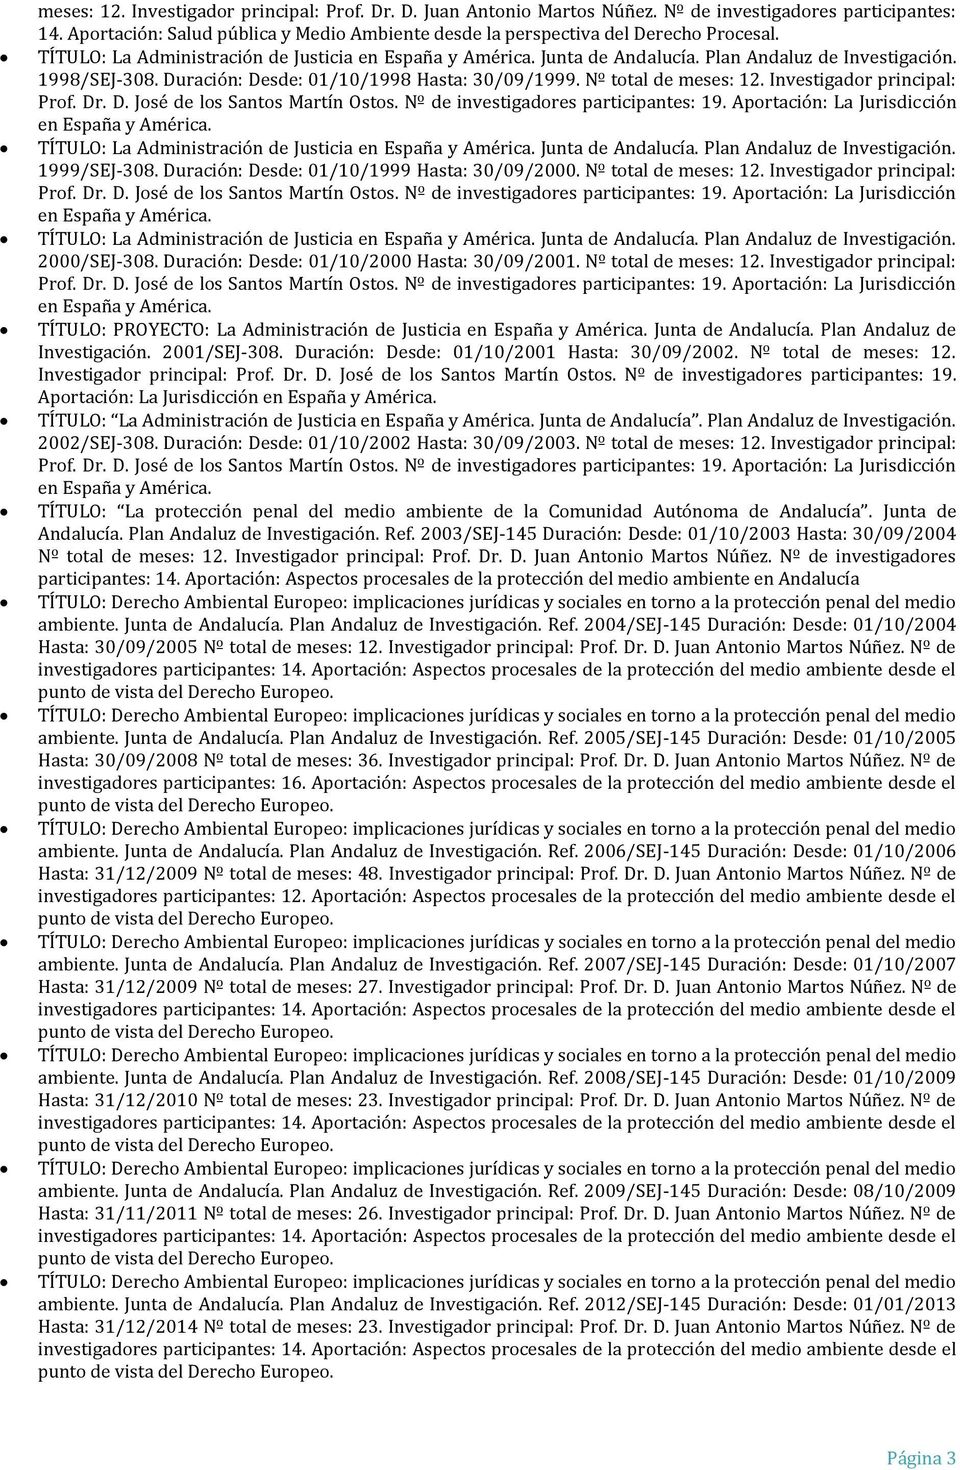 Investigador principal: TÍTULO: La Administración de Justicia Junta de Andalucía. Plan Andaluz de Investigación. 2000/SEJ-308. Duración: Desde: 01/10/2000 Hasta: 30/09/2001. Nº total de meses: 12.